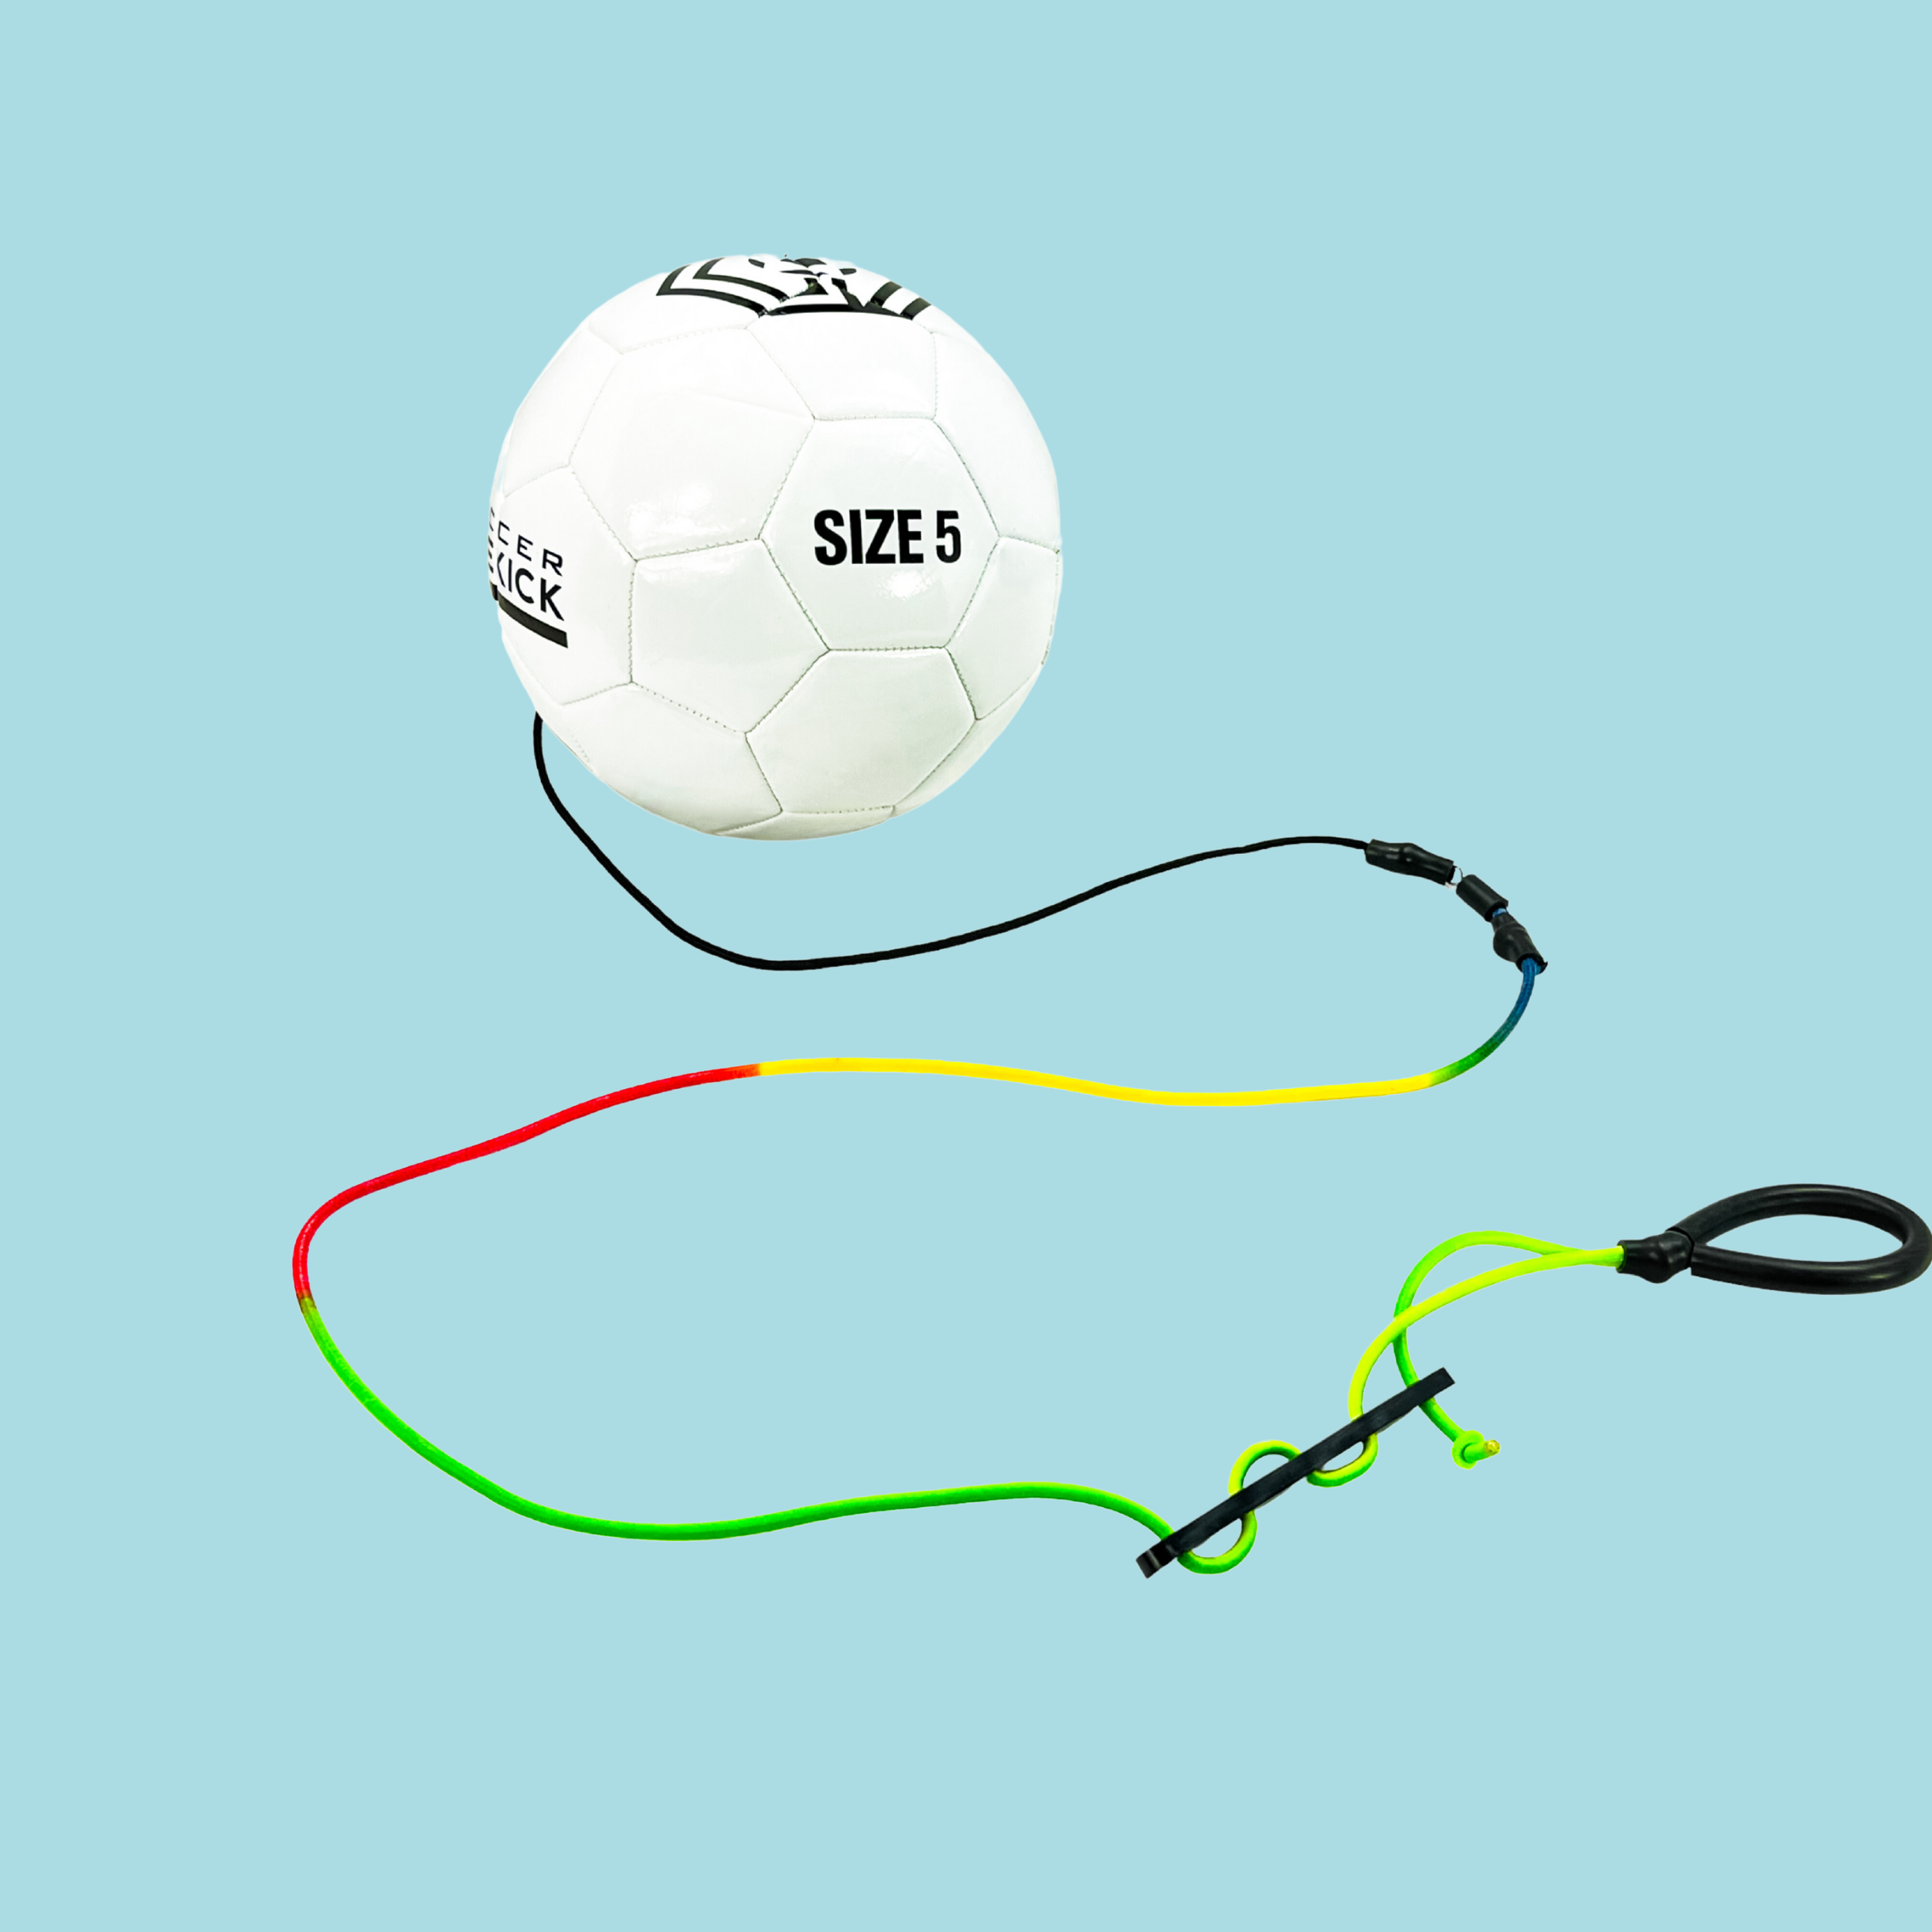 Soccer Sidekick-The Ultimate Soccer Trainer. Buy -12 Balls